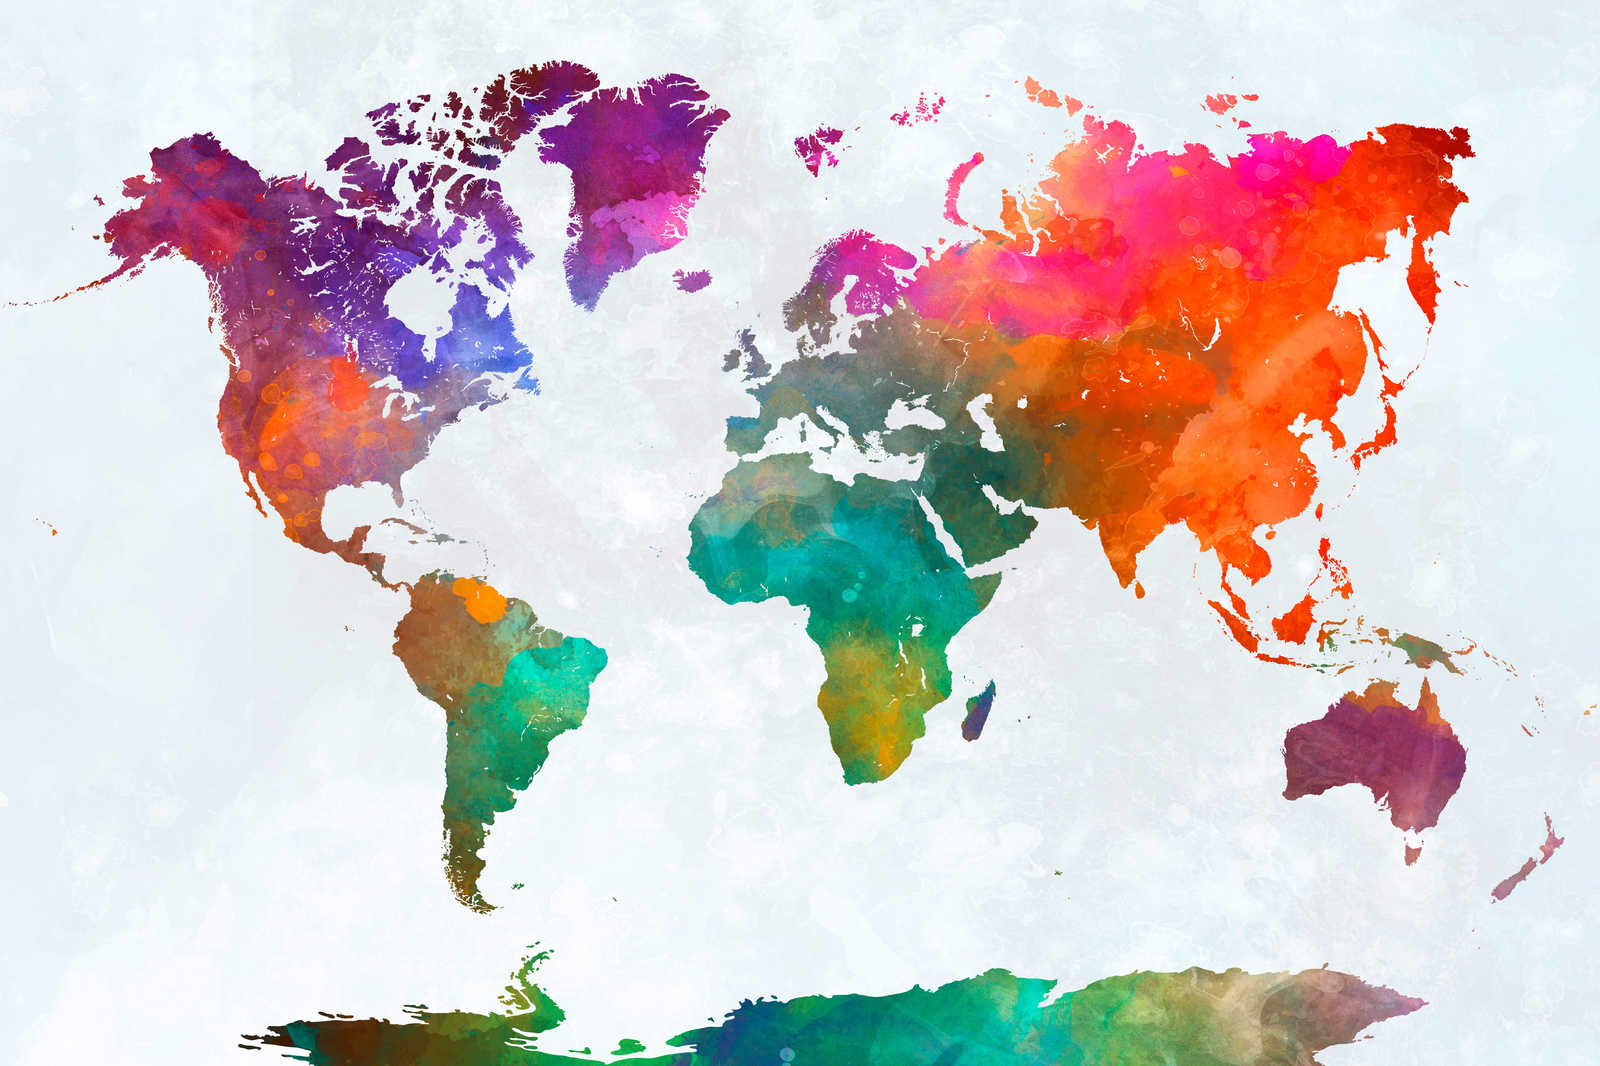             Mappa del mondo colorata su tela - 0,90 m x 0,60 m
        